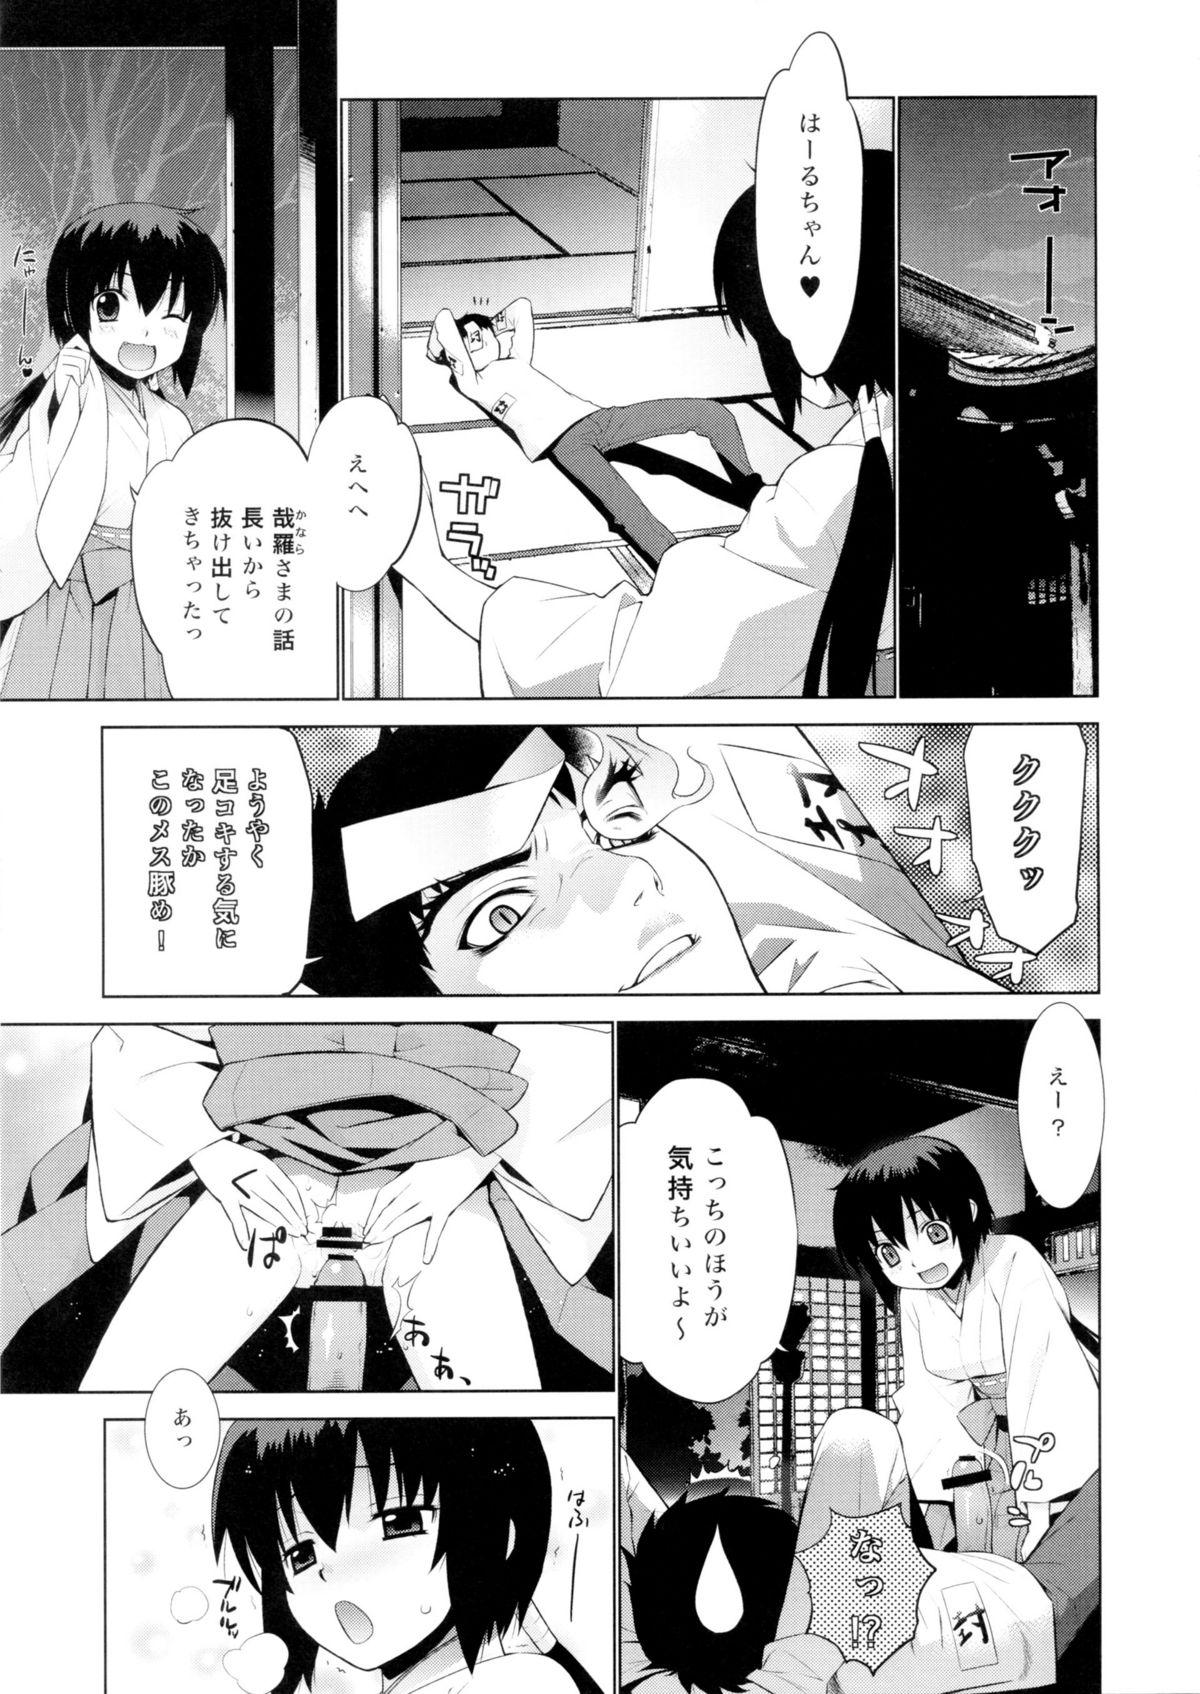 Nut Kanara-sama no Nichijou Go - Tonari no miko-san wa minna warau Hot Whores - Page 7